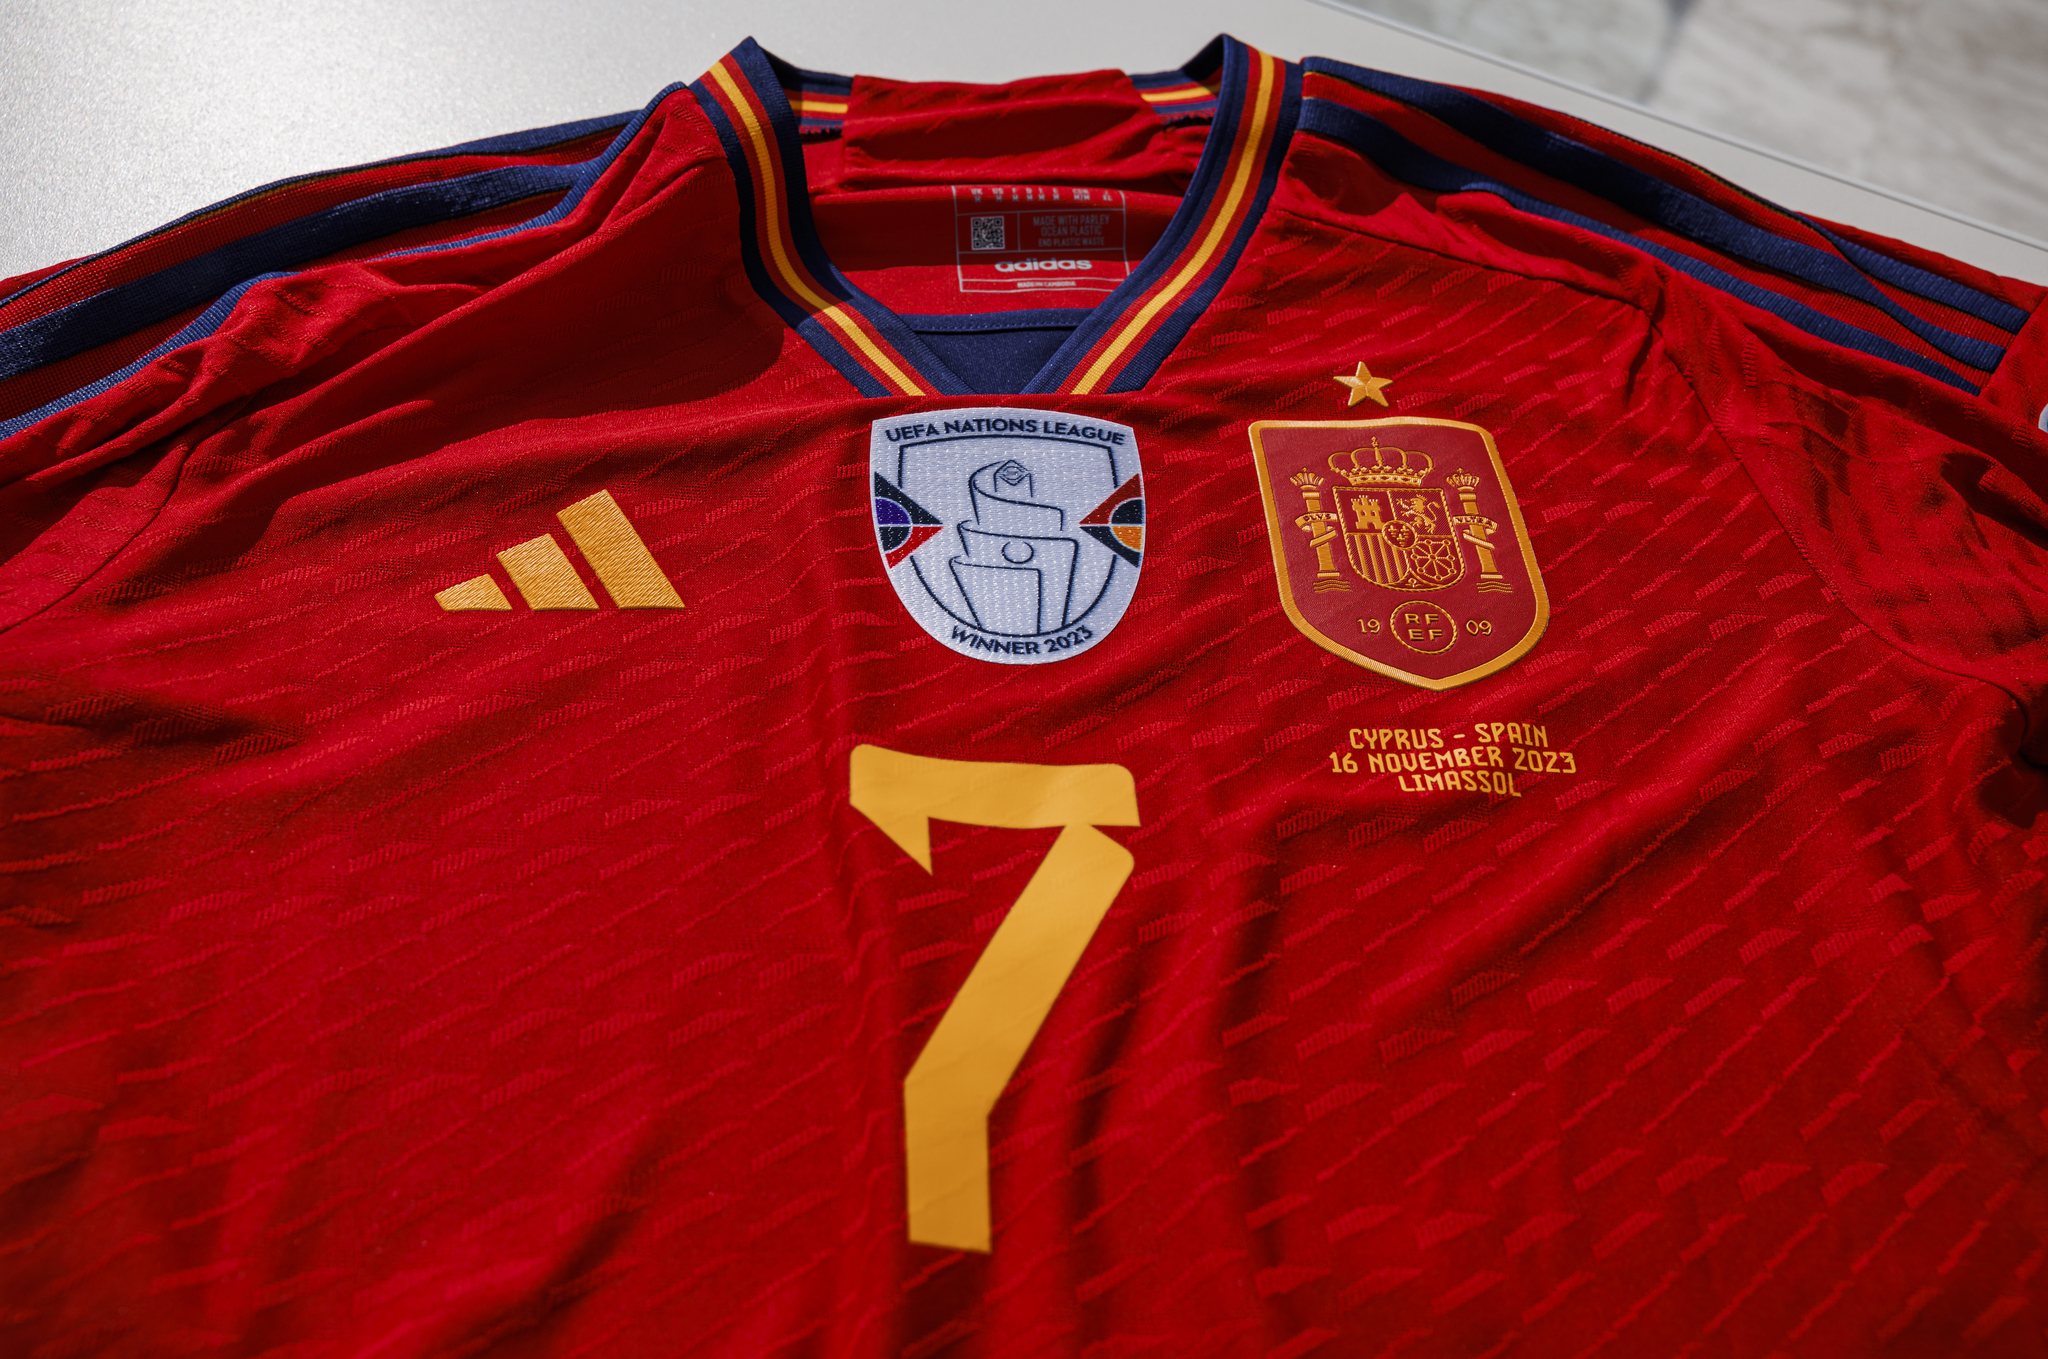 La camiseta de la Seleccin Espaola con el parche de hombres de la Nations League